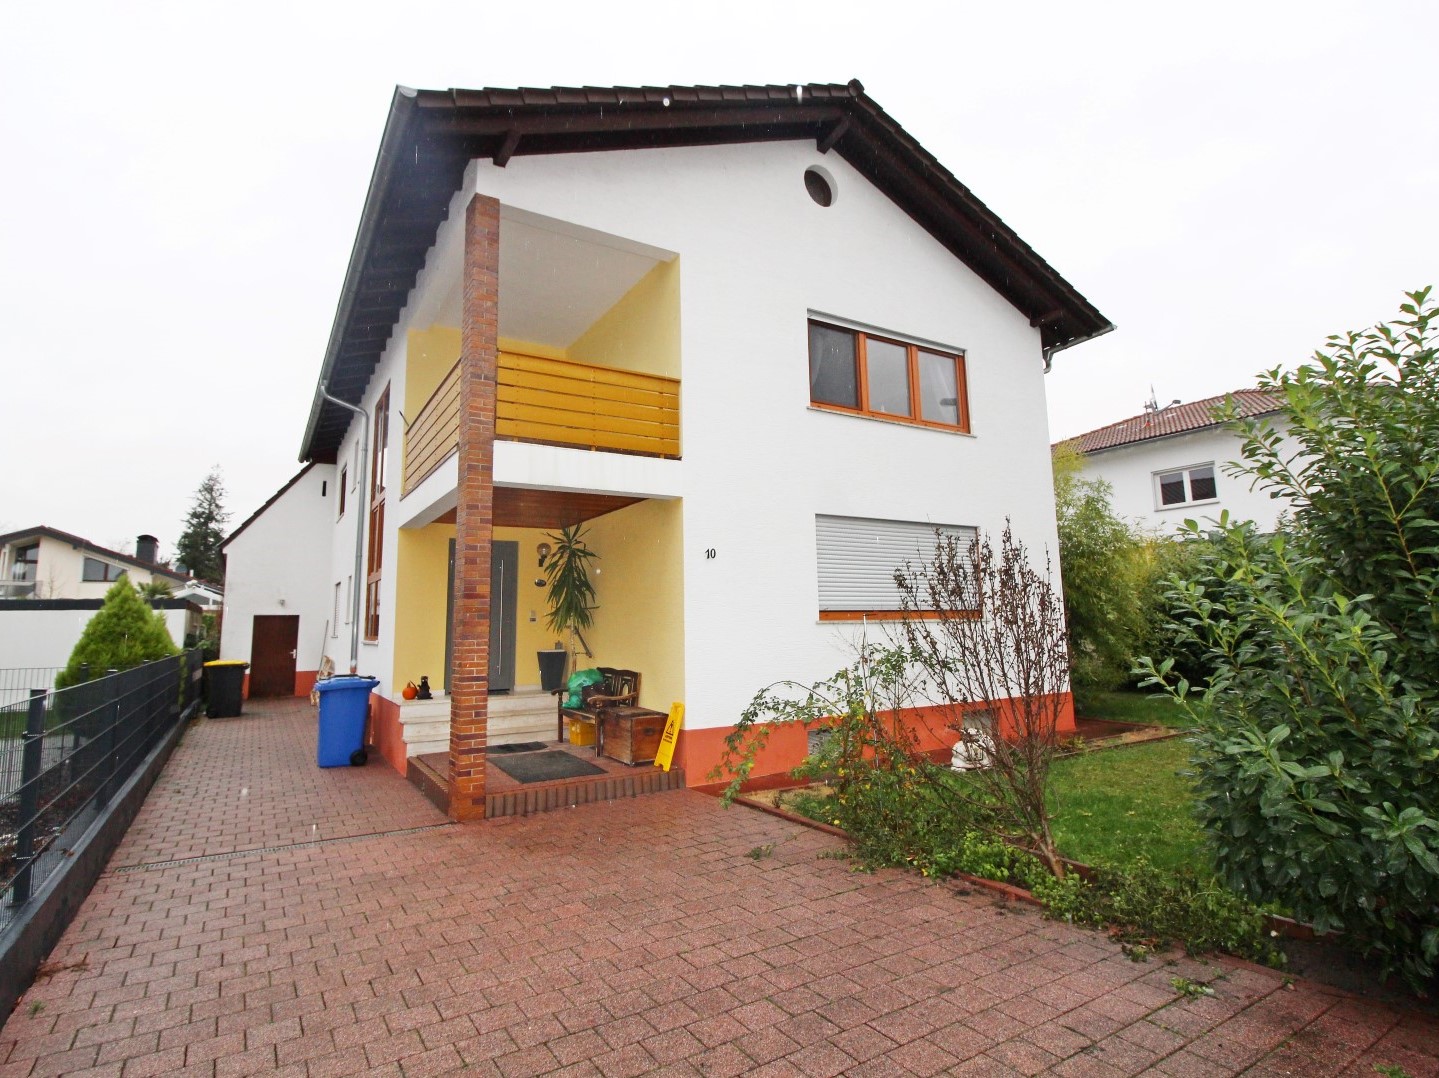 Objekt 893: Funktionell geschnittenes Einfamilienhaus mit Garten in ruhiger Wohnlage von Stockstadt